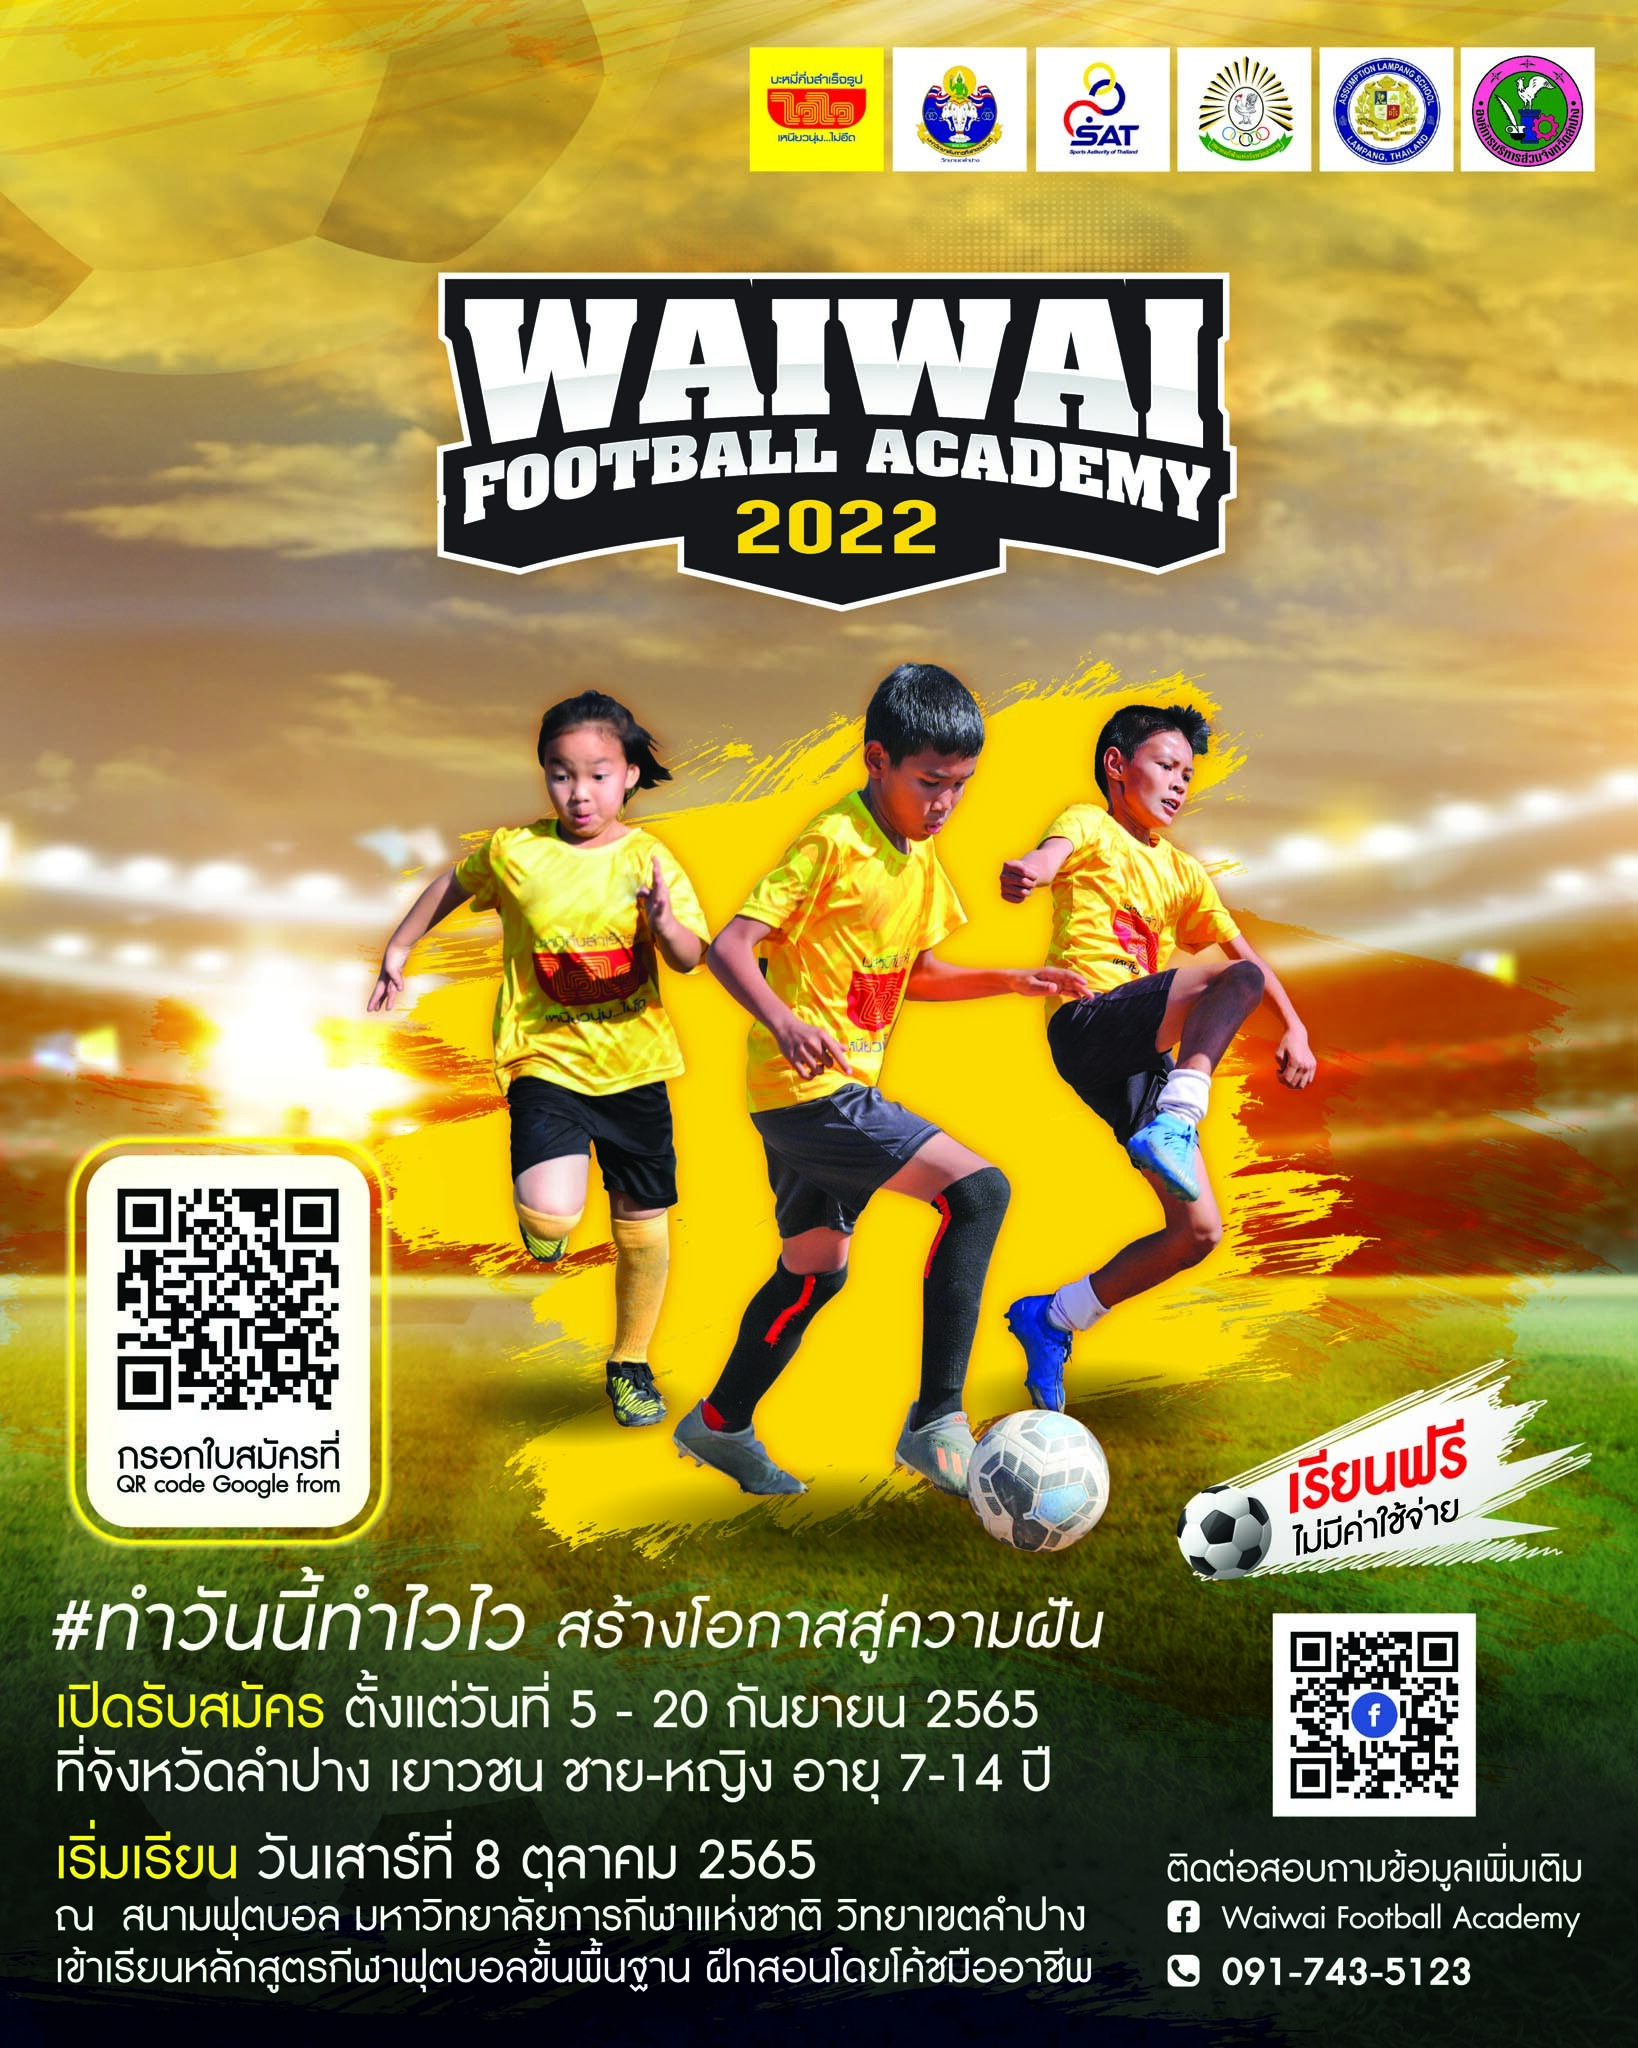 เด็กลำปางเตรียมเฮ!.... "ไวไว" รับสมัครเยาวชนร่วมโครงการ "WAIWAI FOOTBALL Academy 2022" เรียนฟุตบอลฟรี!!! รับชุดฟรี!!! ไม่มีค่าใช้จ่าย